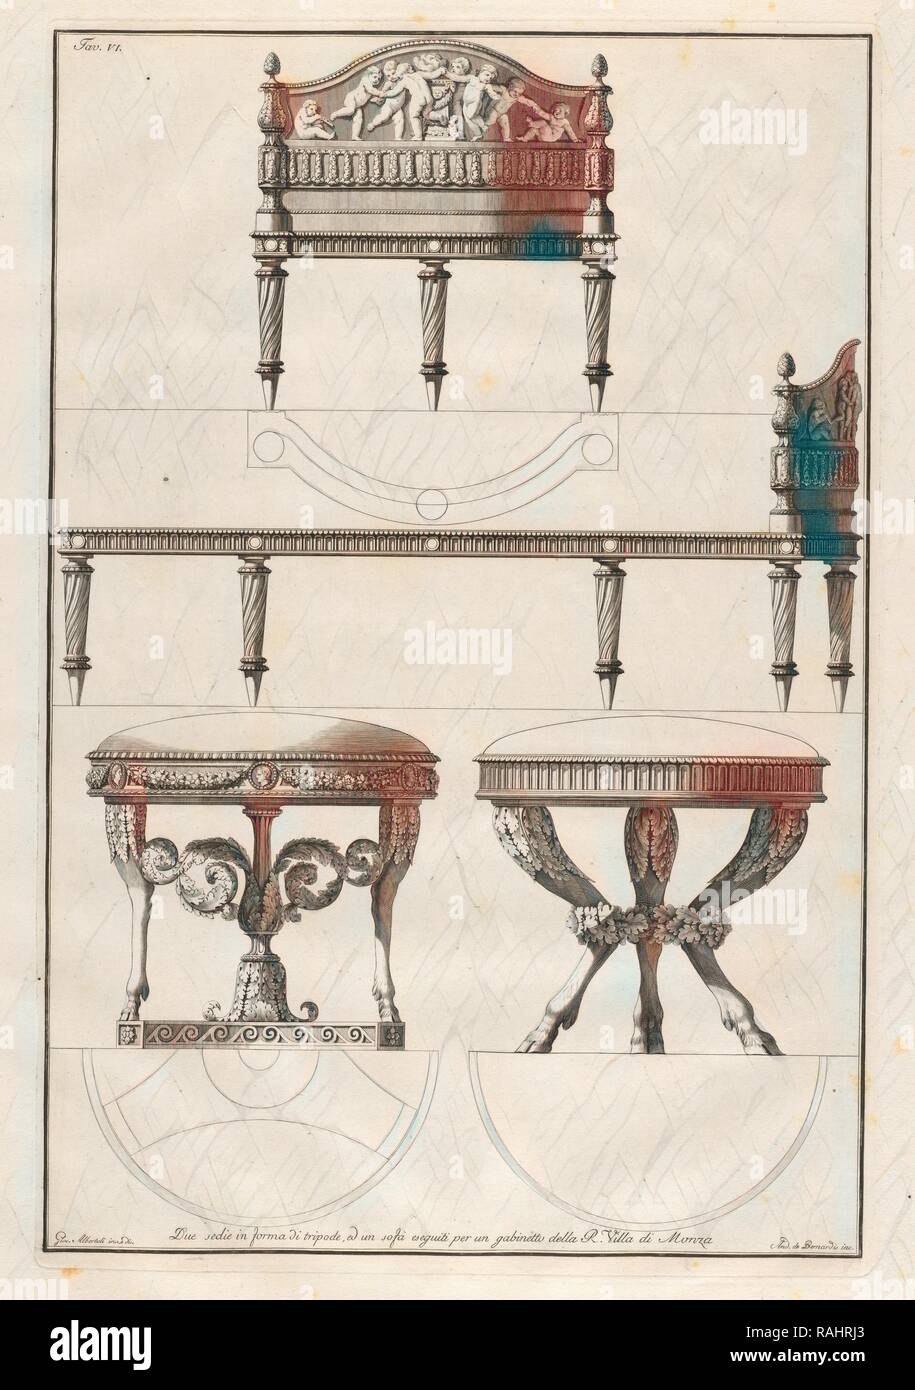 Due sedi in forma di tripode, ed un sofa eseguiti per un gabinetti della R. Villa de Monza, Alcune decorazioni di reimagined Stock Photo